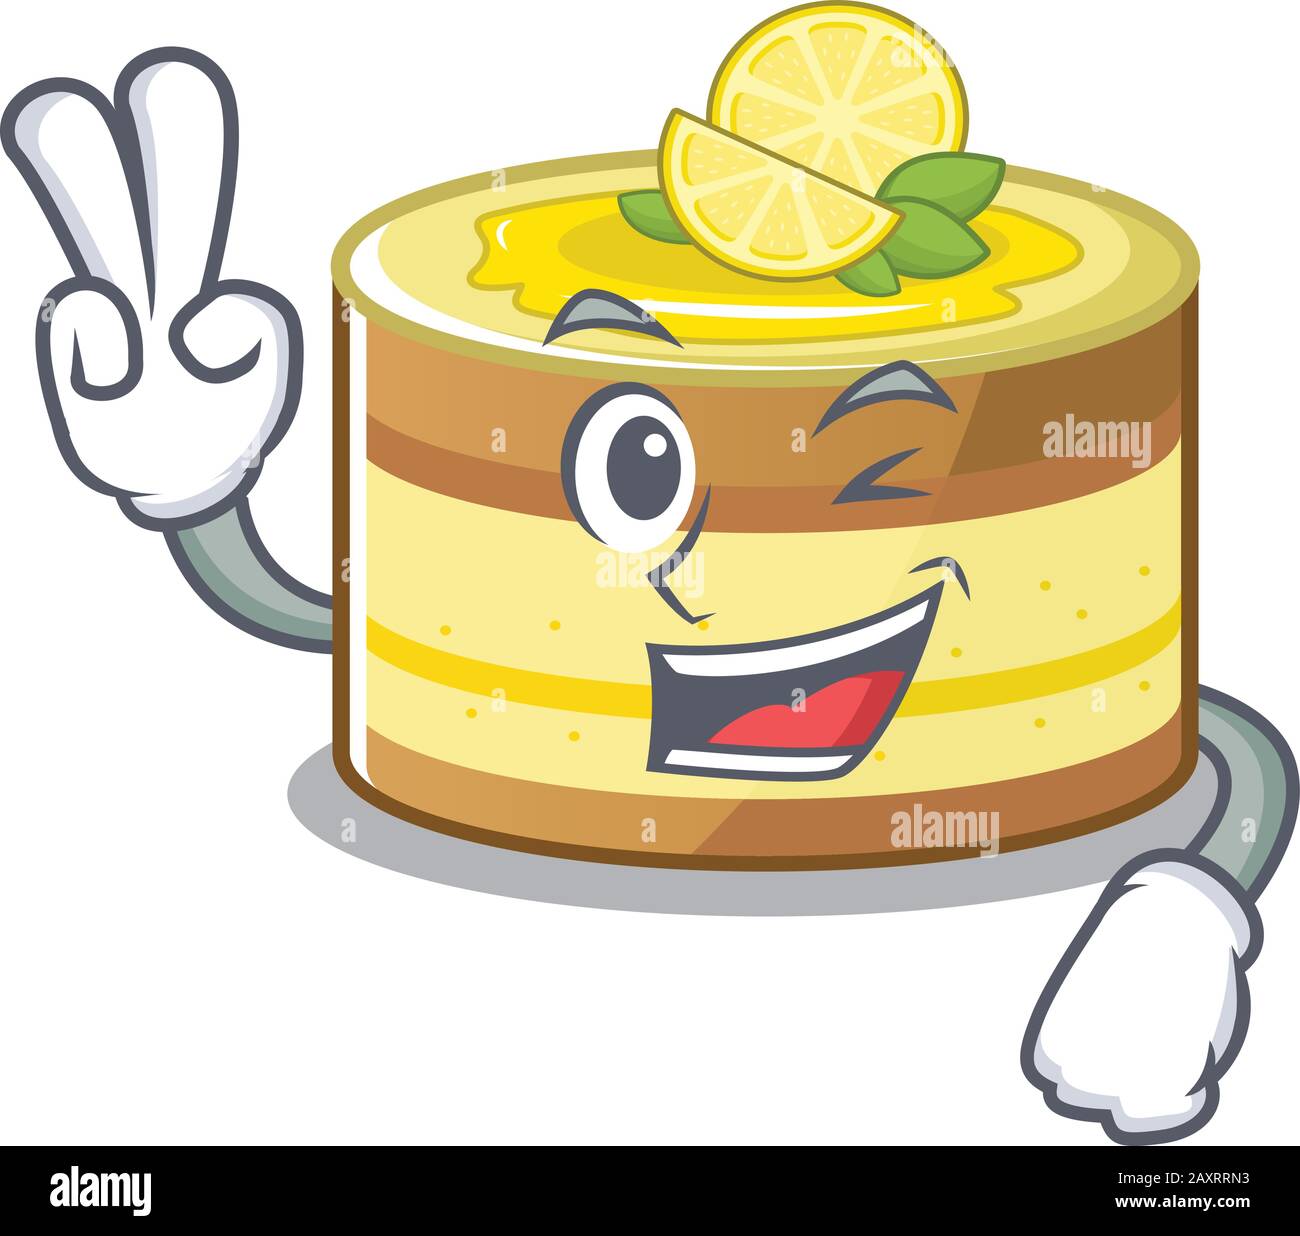 Mascotte De Drole De Gateau Au Citron Personnage De Dessin Anime Avec Deux Doigts Image Vectorielle Stock Alamy